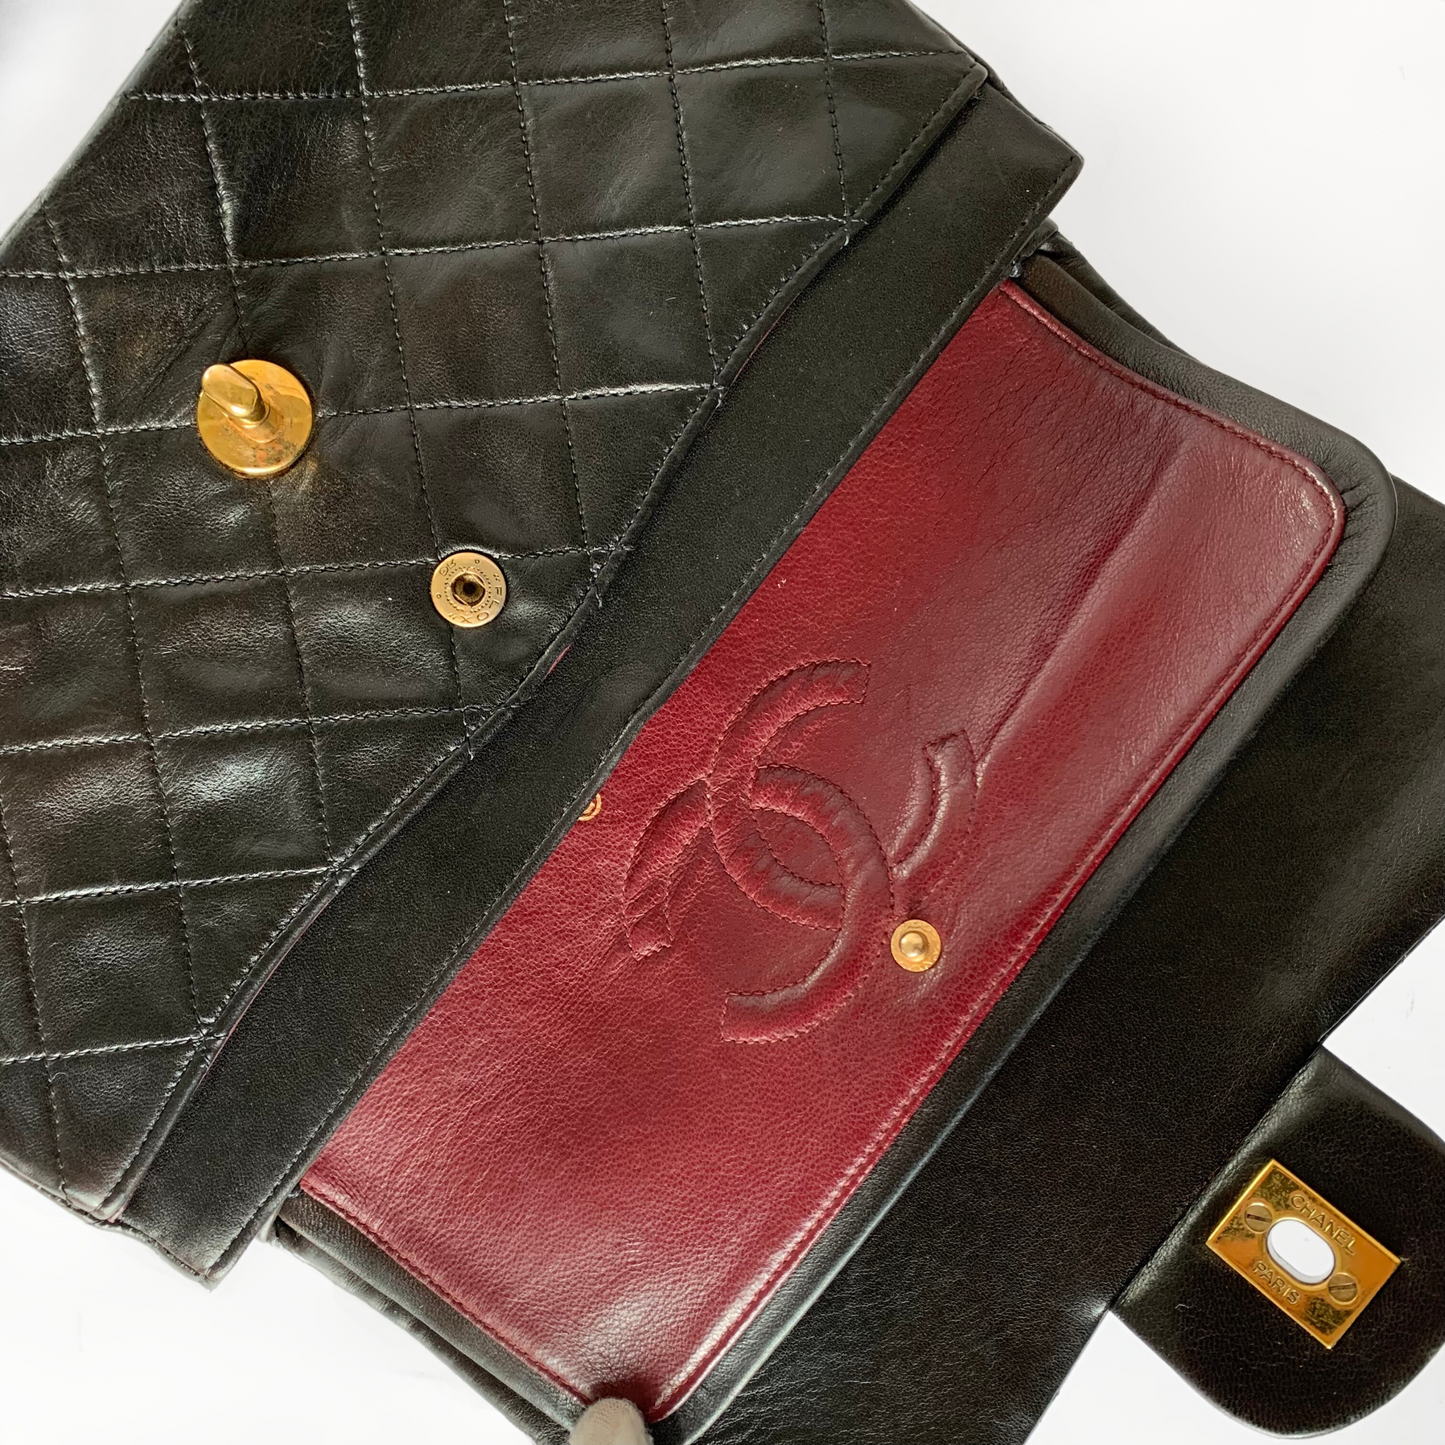 Chanel Chanel Klassiek Lamsleer met Dubbele Flap - Handtassen - Etoile Luxury Vintage